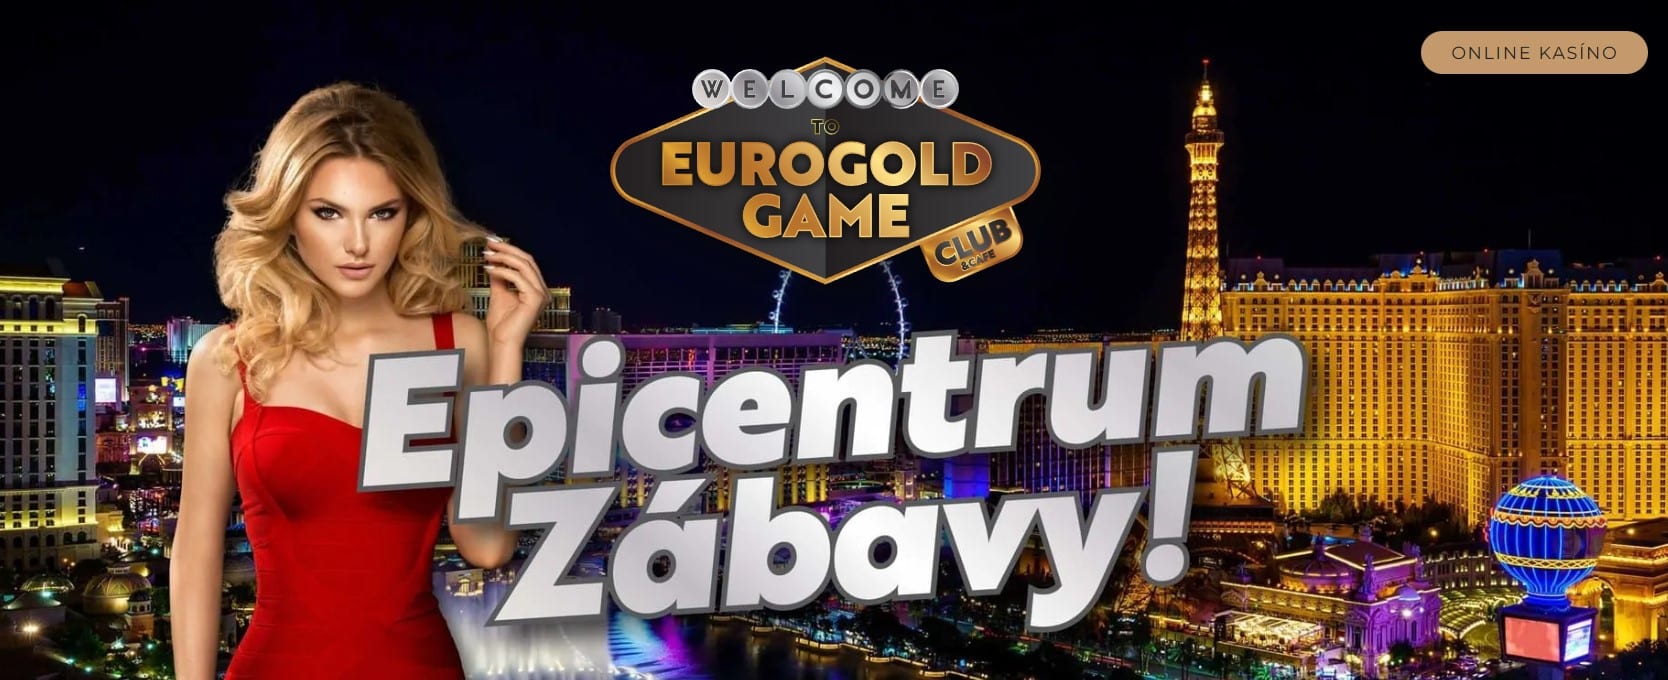 EUROGOLD GAME kasino epicentrum zabavy radost kasino